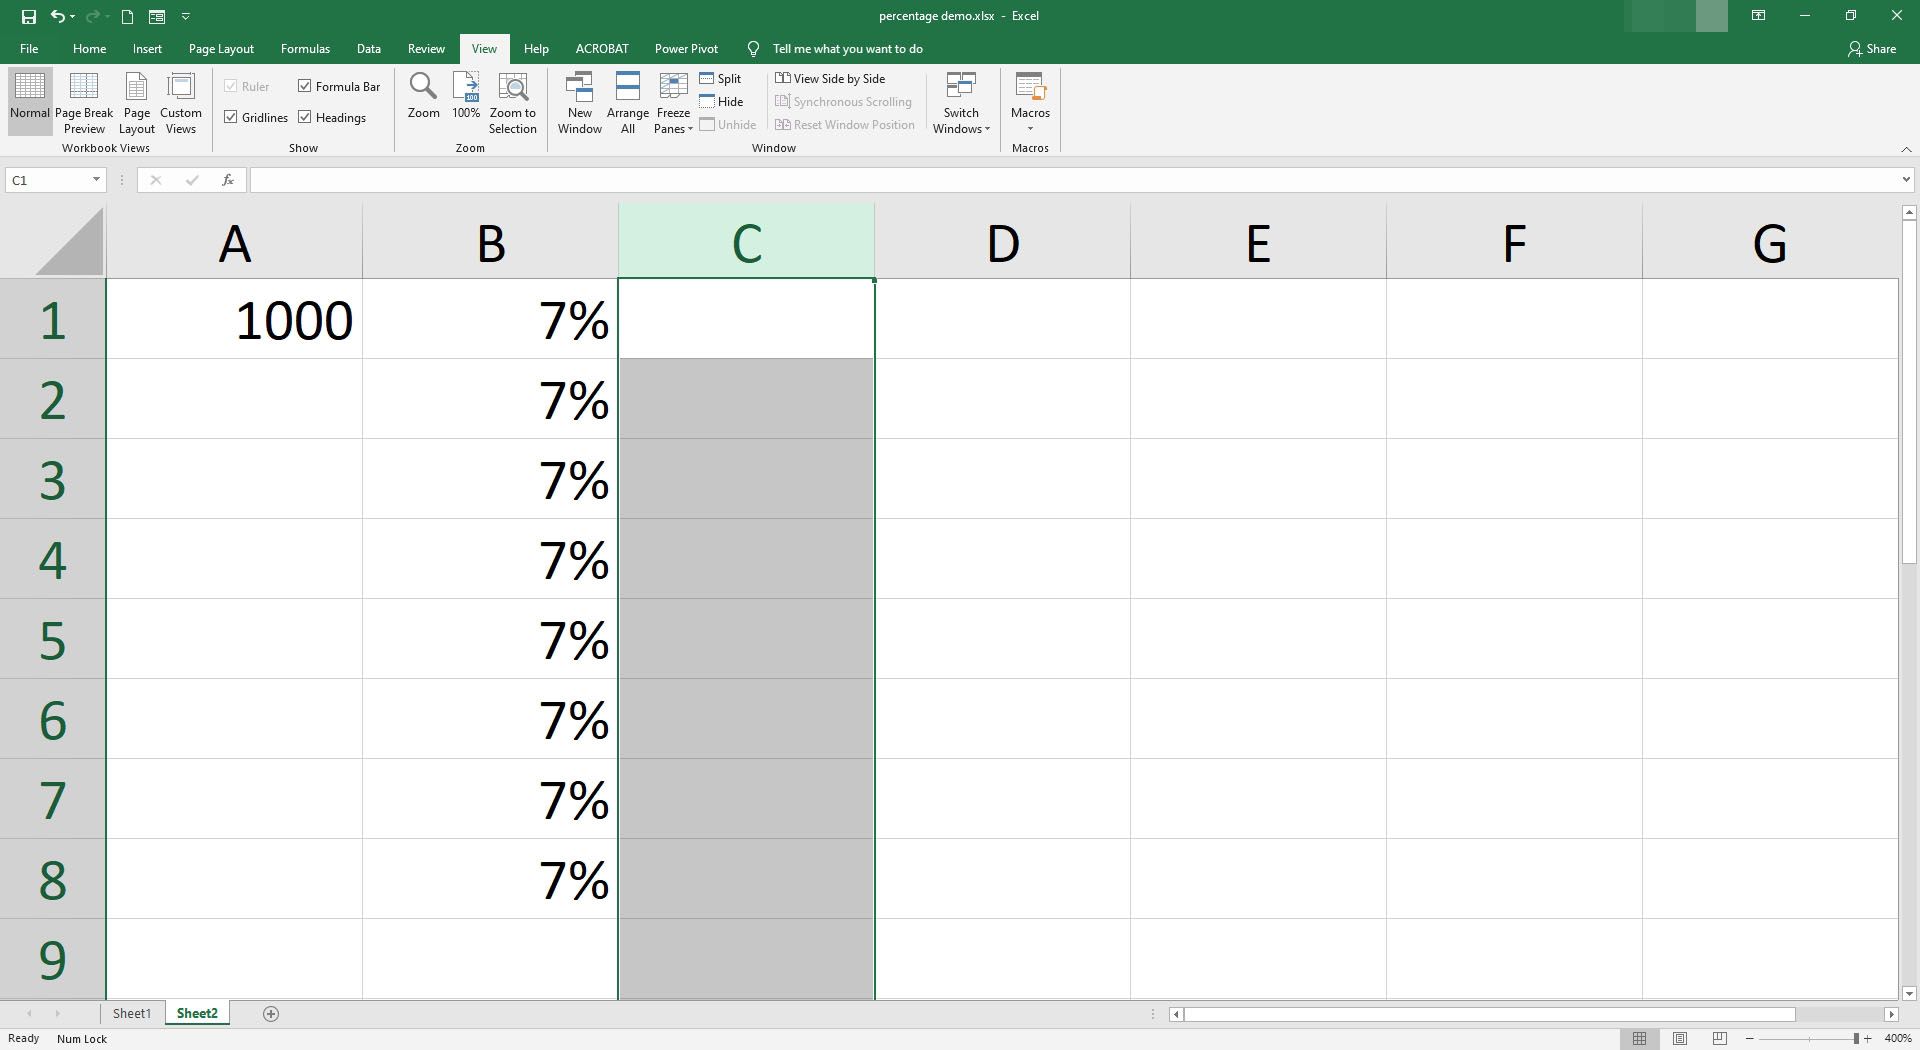 C-kolumnen är vald i Excel.